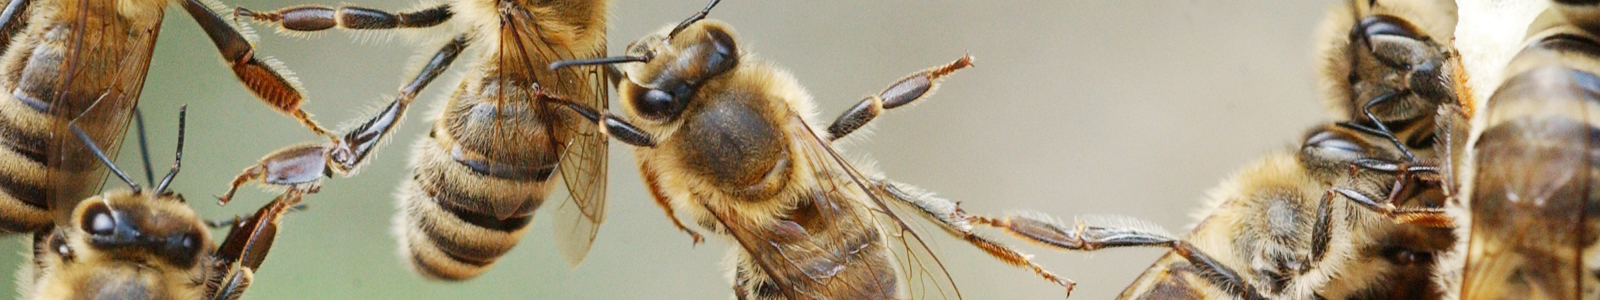 Bienen in Großaufnahme ©DLR